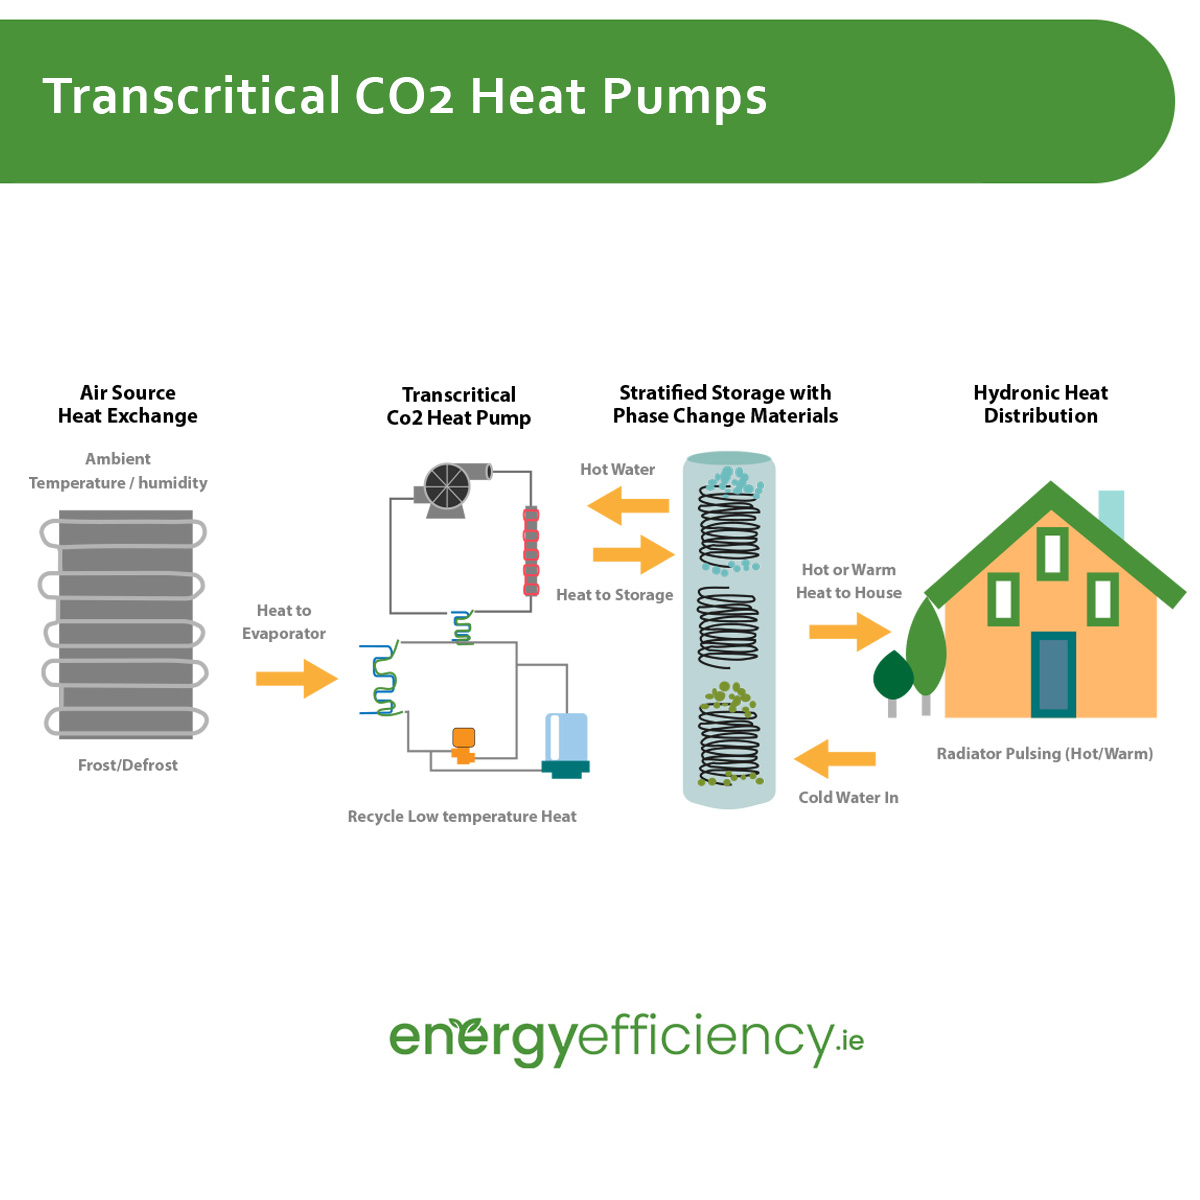 Transcritical CO2 Heat Pumps